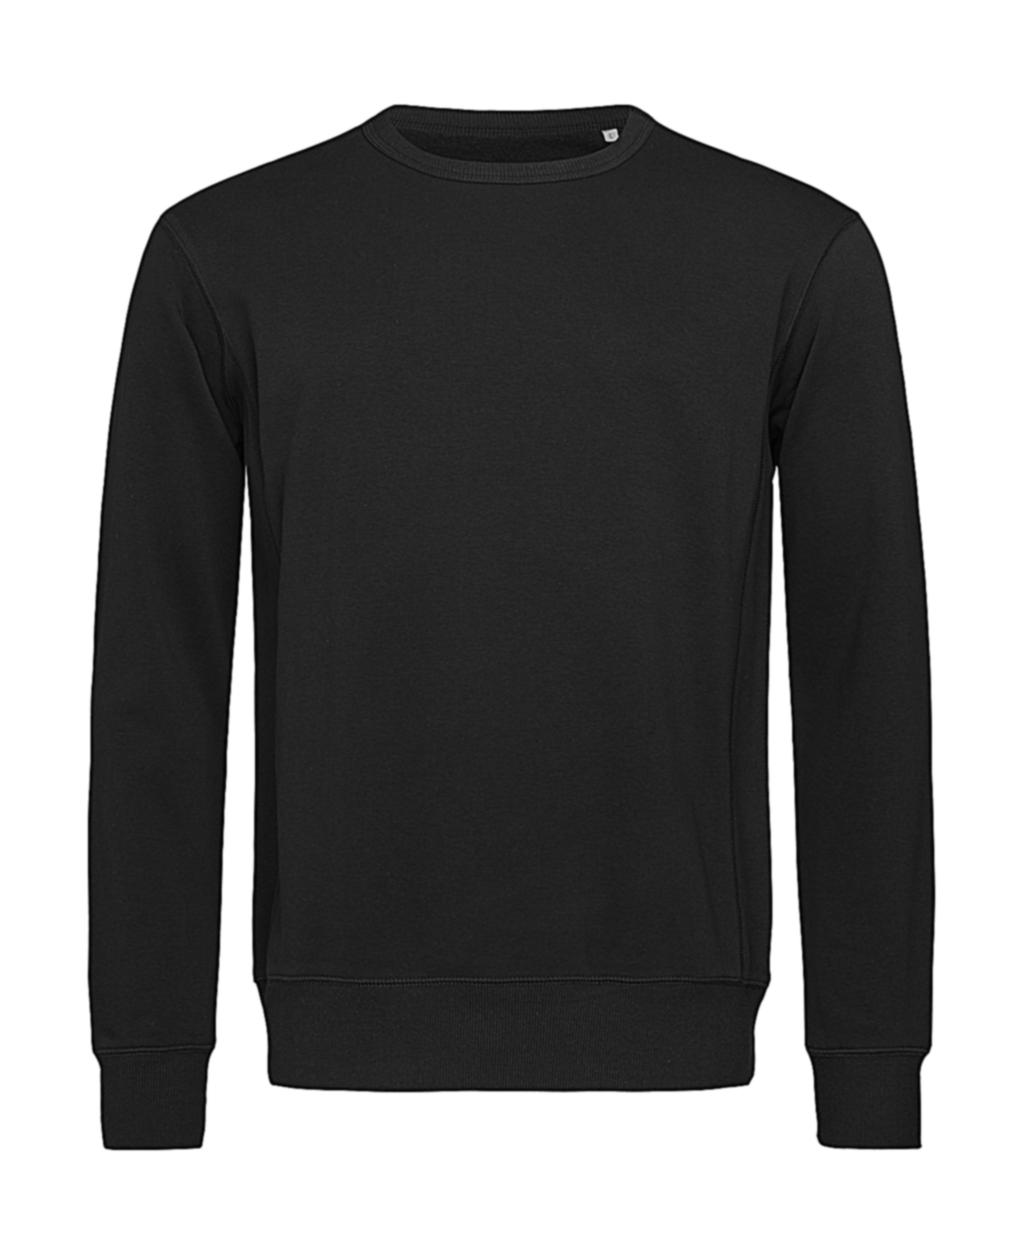  Sweatshirt Select in Farbe Black Opal